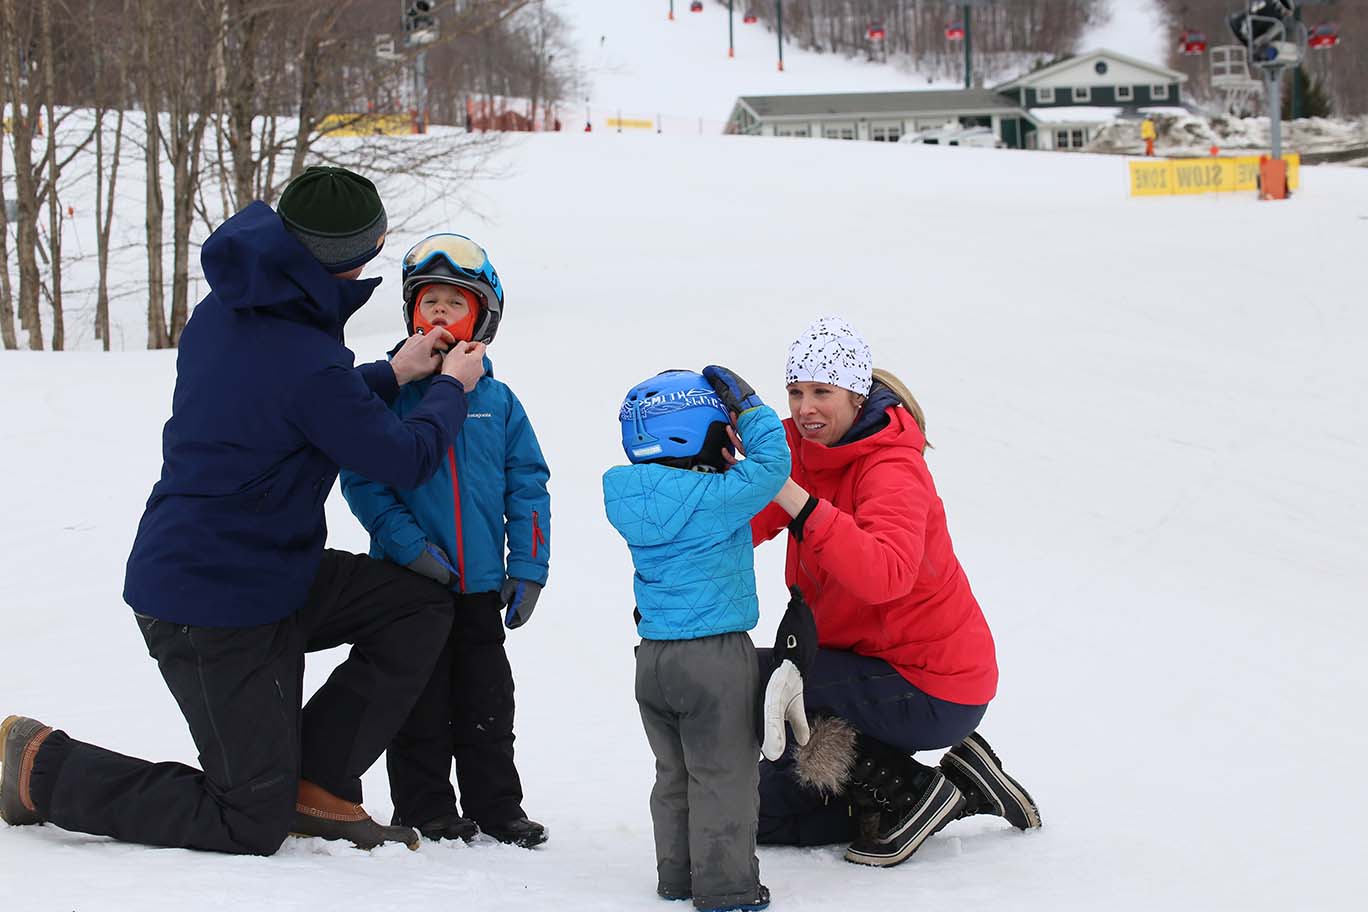 Parents adjusting ski helmets on children